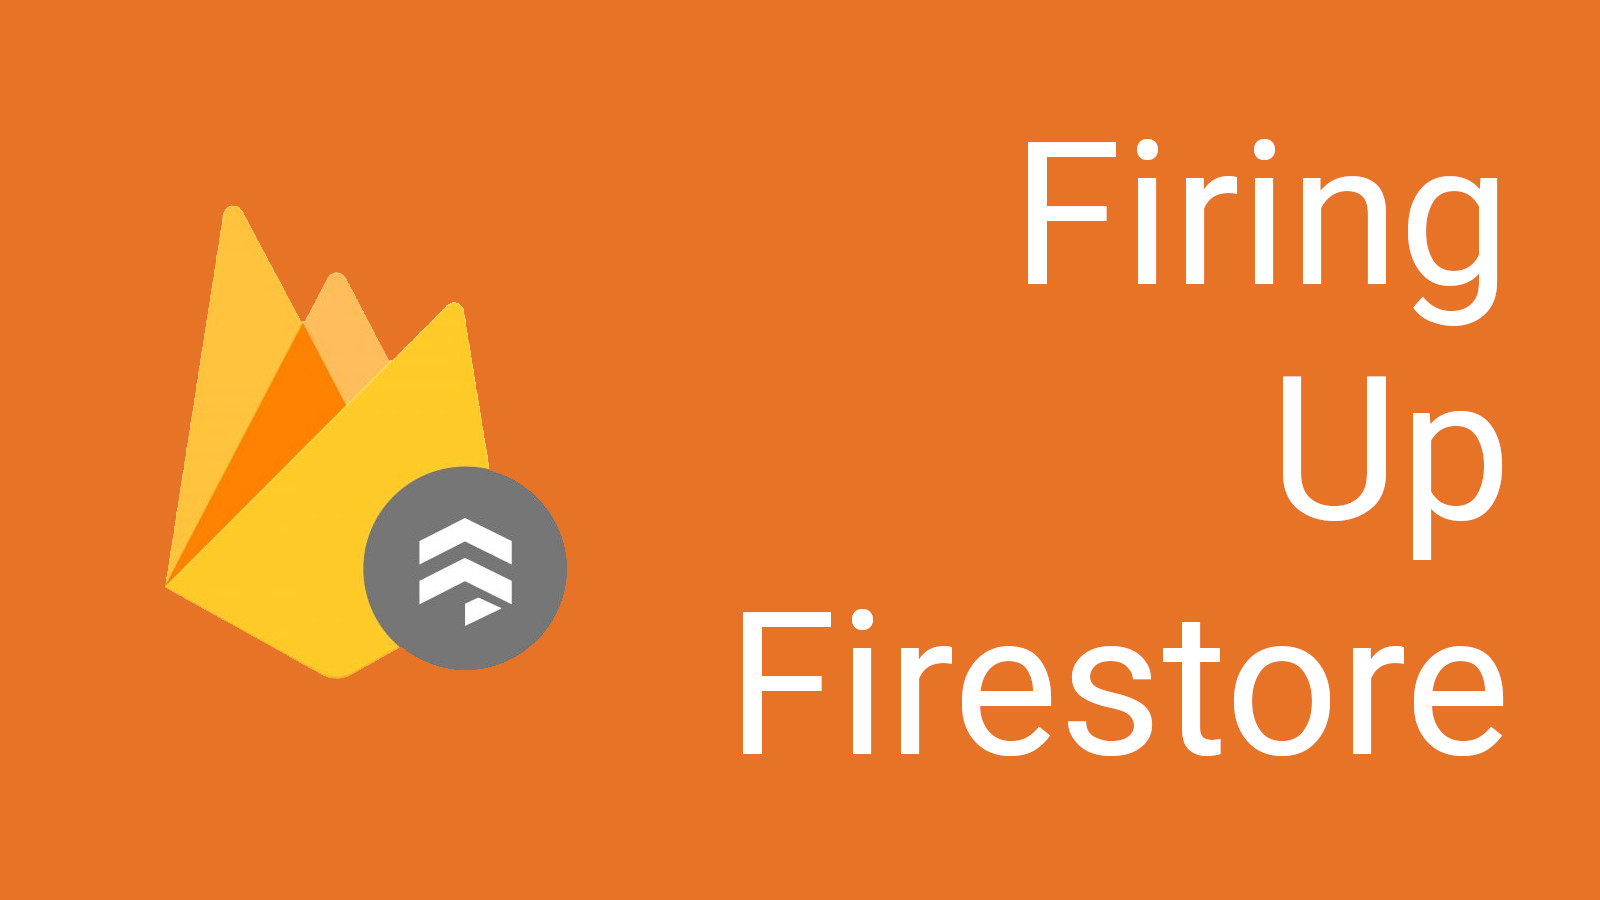 Firing Up Firestore